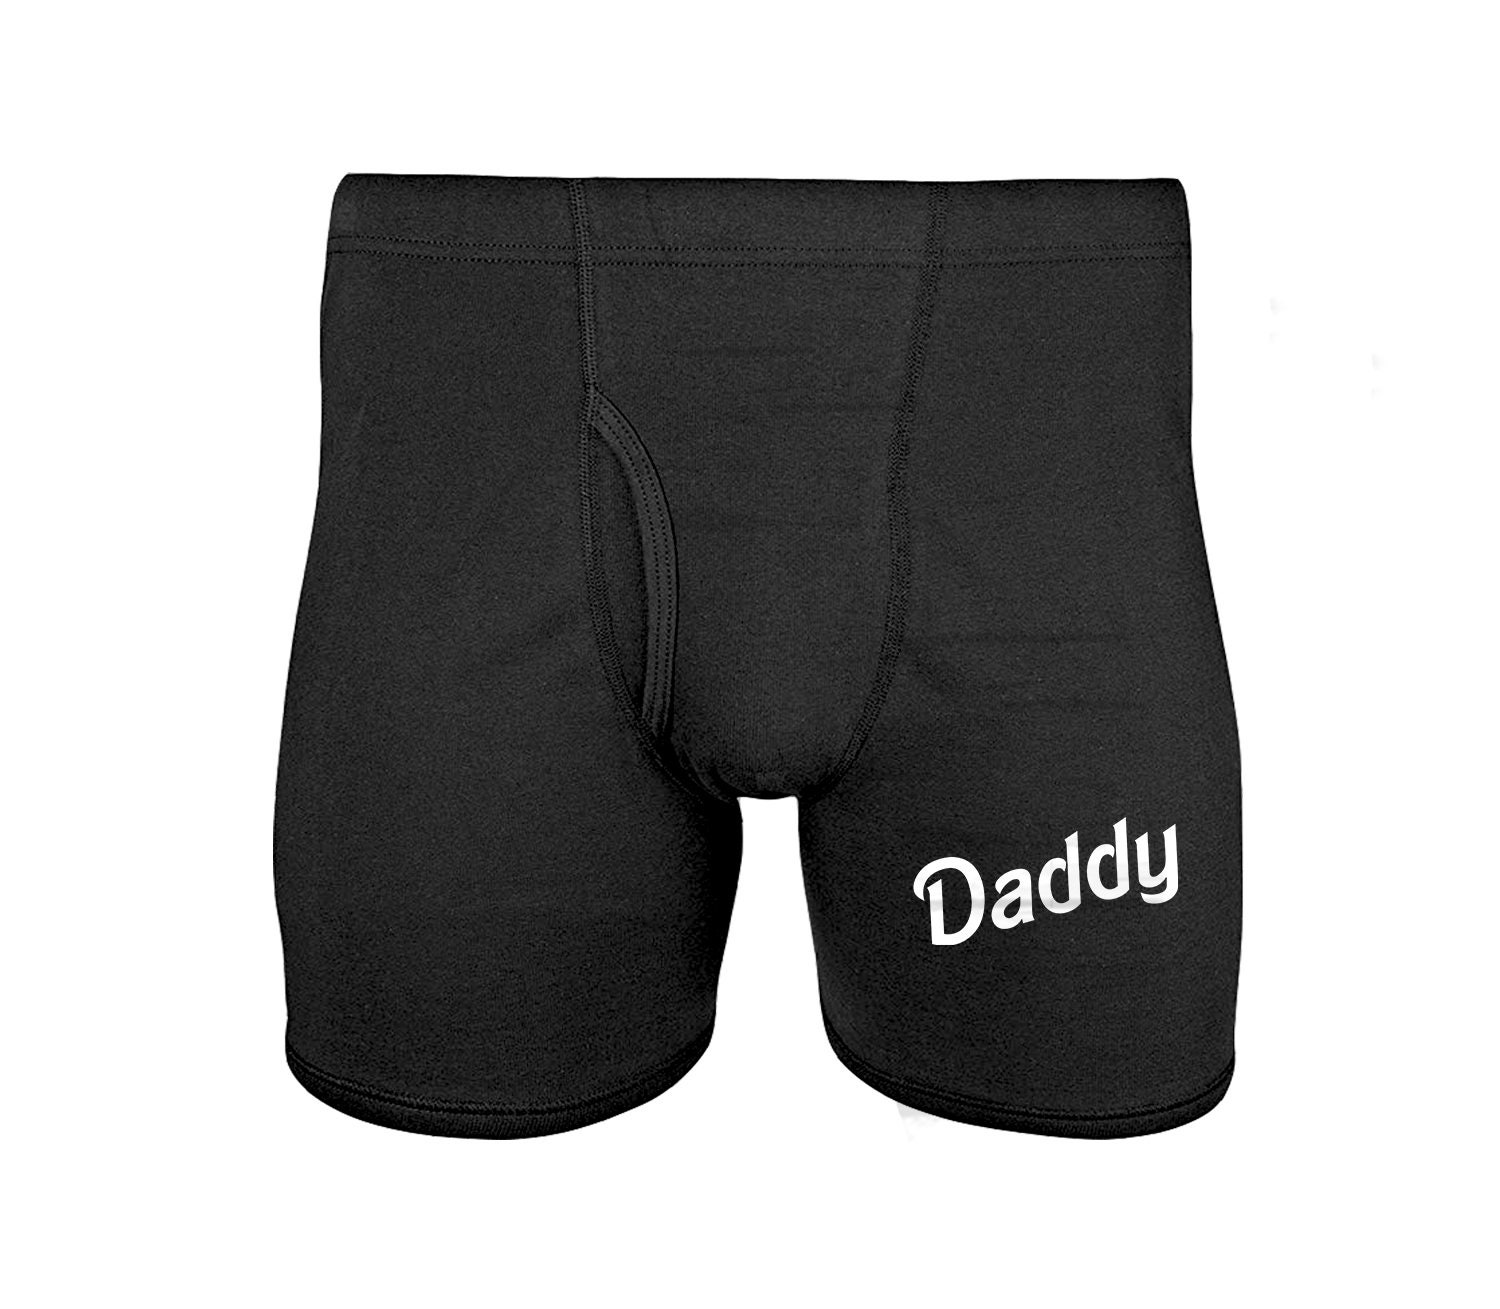 Daddy Mens Underwear Funny DDLG Gift For Men Boyfriend Husband Dad